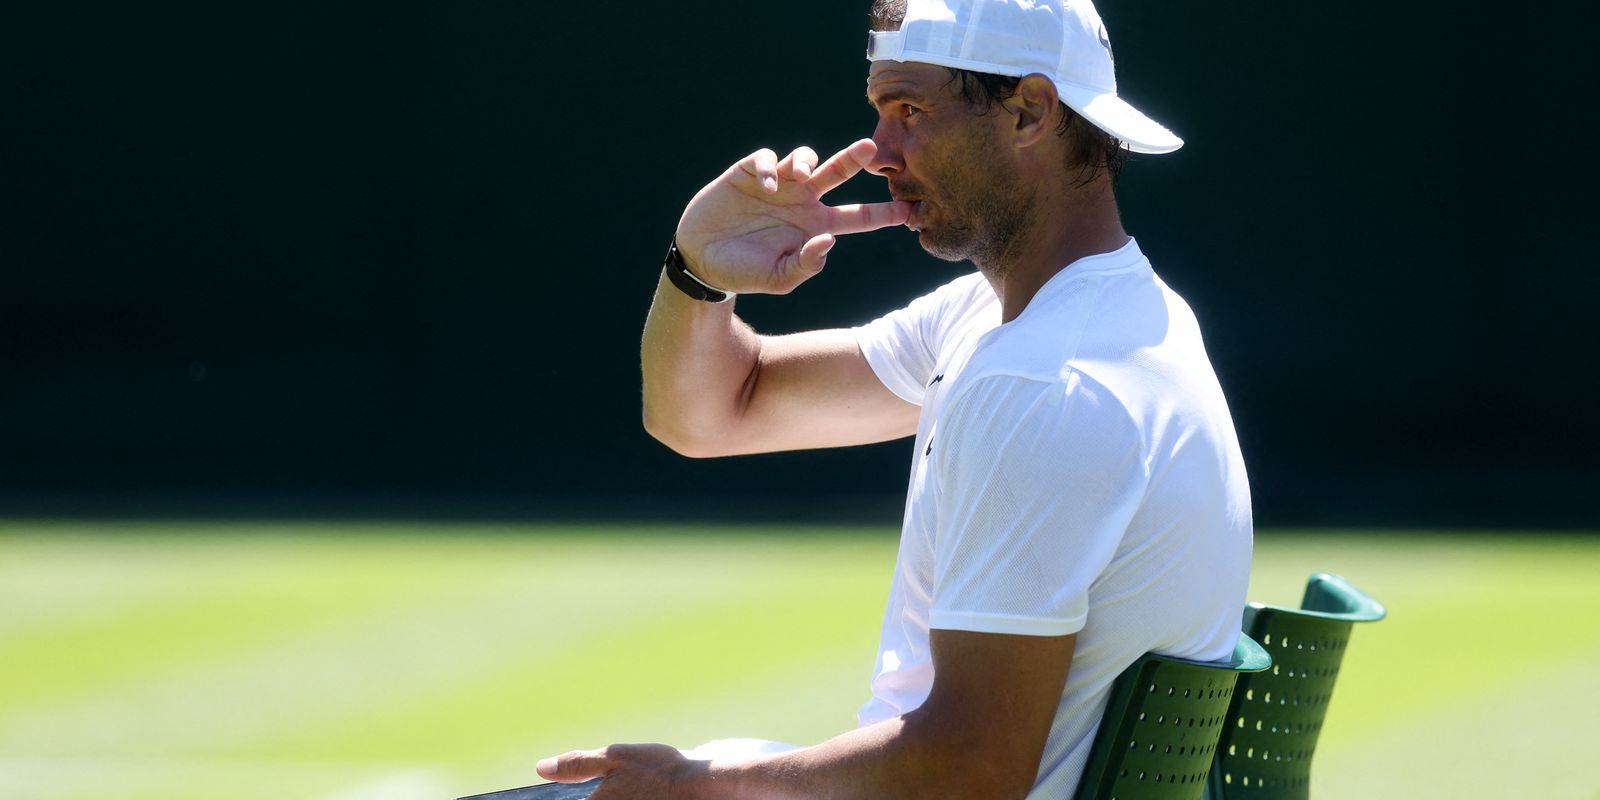 L’exhibition correspond à une préparation « parfaite » pour Wimbledon, selon Nadal